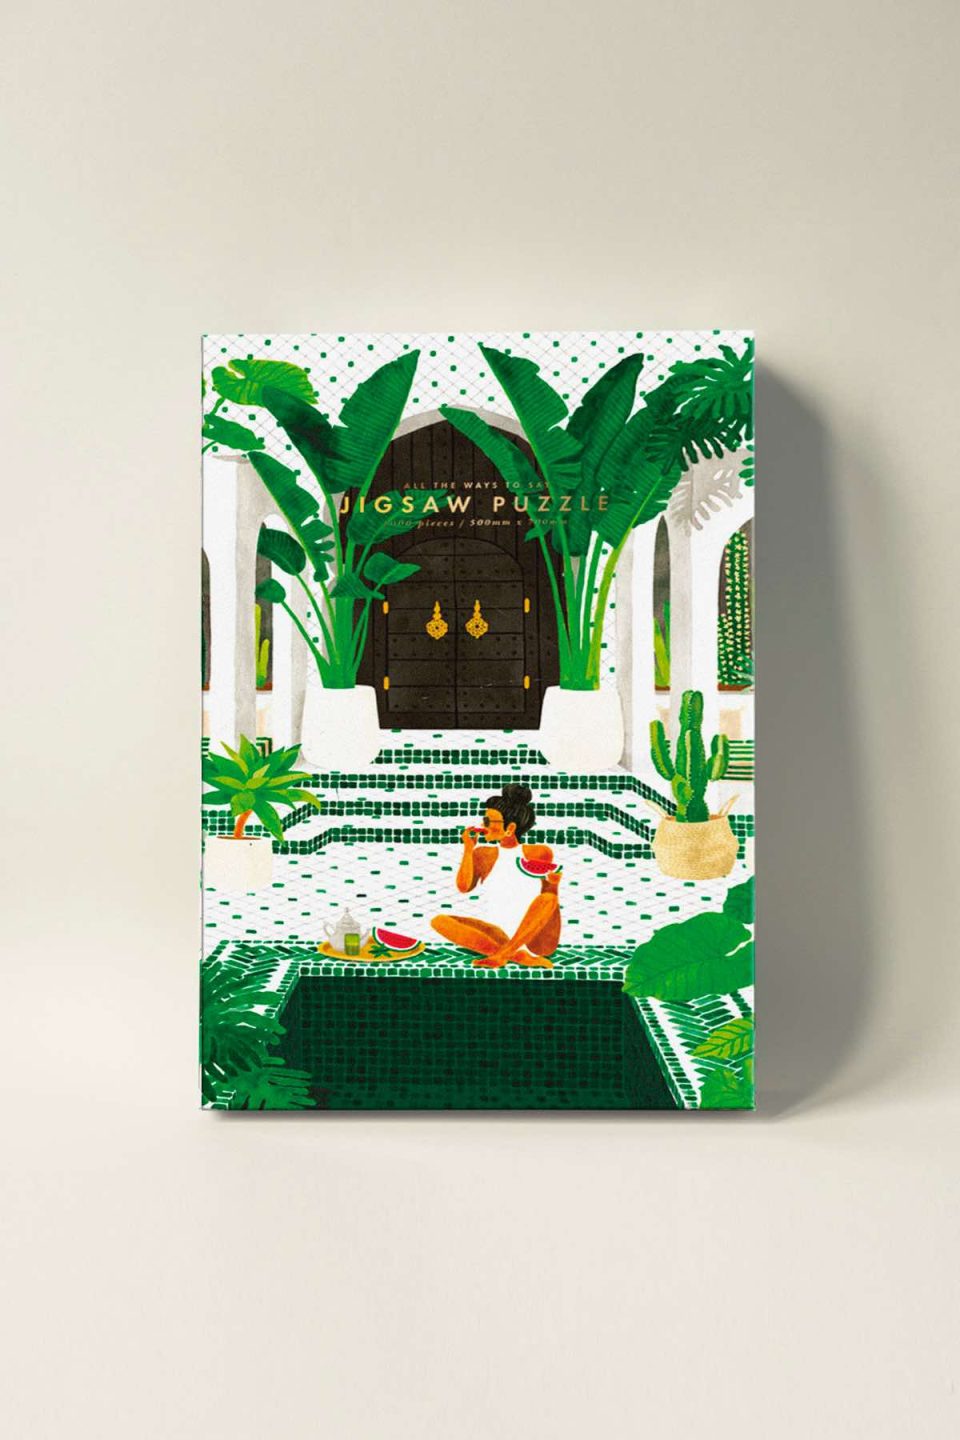 Kutija puzli s motivom žene koja jede lubenicu uz bazen u lijepoj vili popločanoj pločicama s arapskim uzorcima, okružena s puno biljaka i palmi